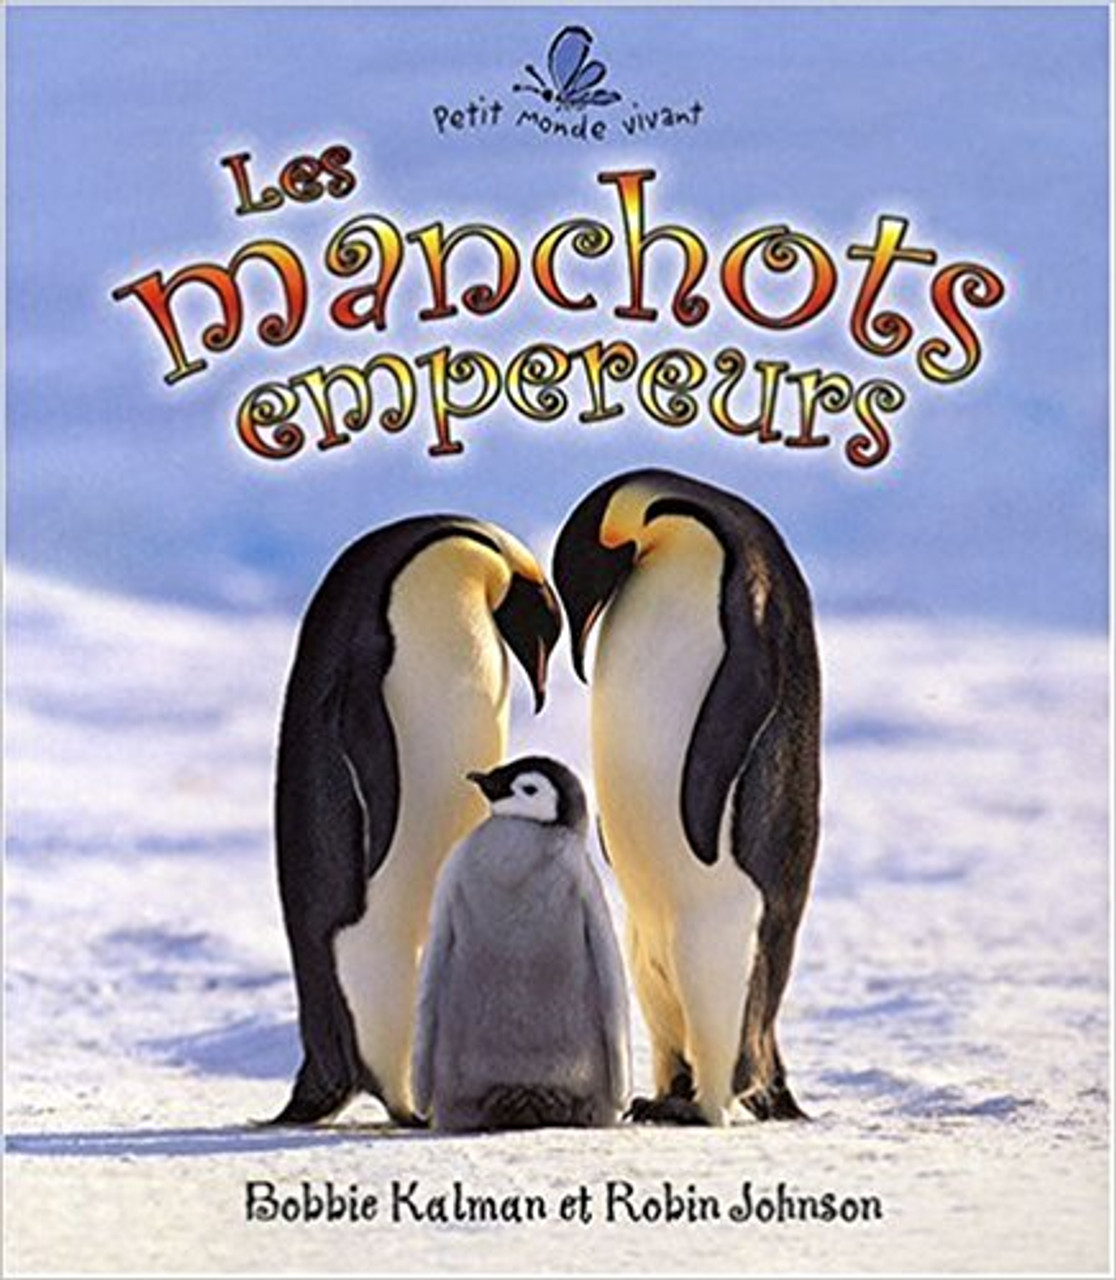 Les Manchots Empereurs by Bobbie Kalman